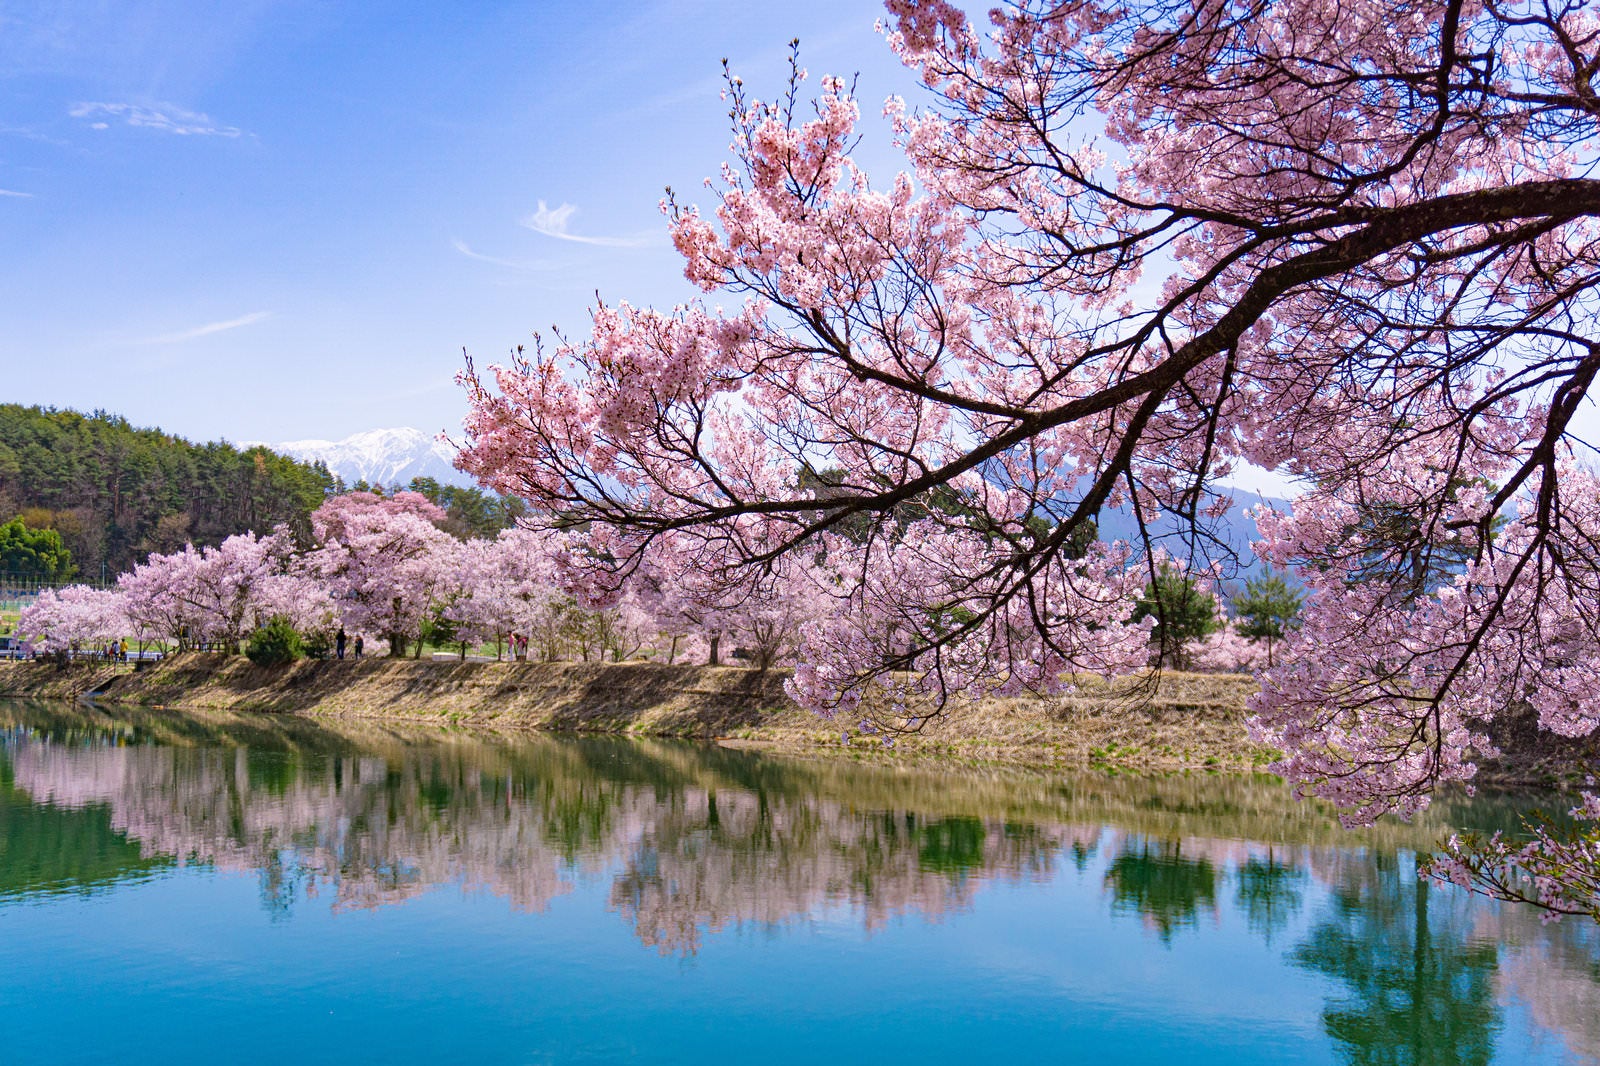 「一枝の桜とその向こうに見える淡いシンメトリーの景色」の写真